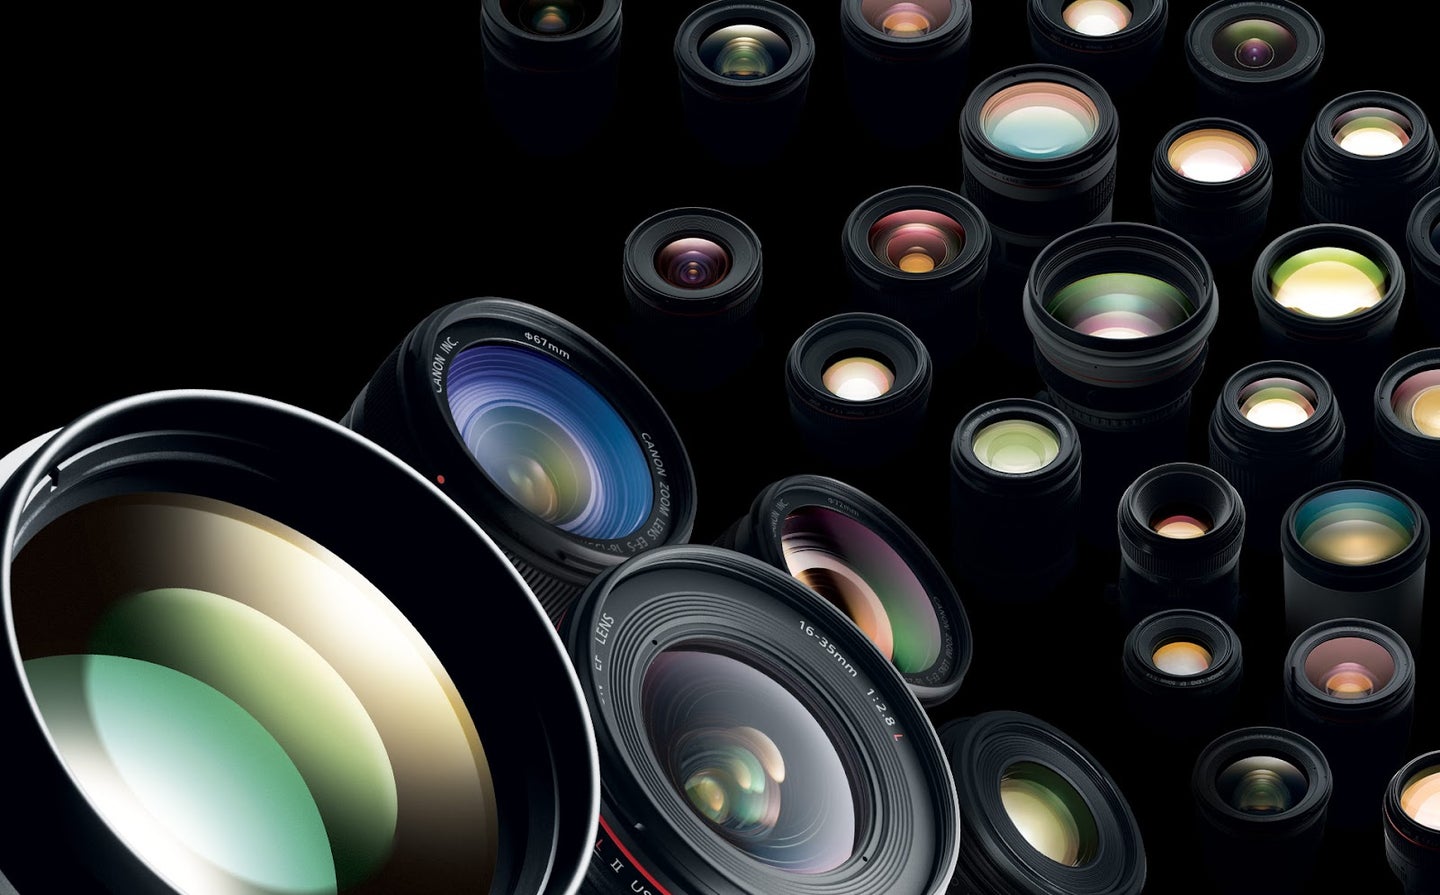 A photo of Canon lenses.